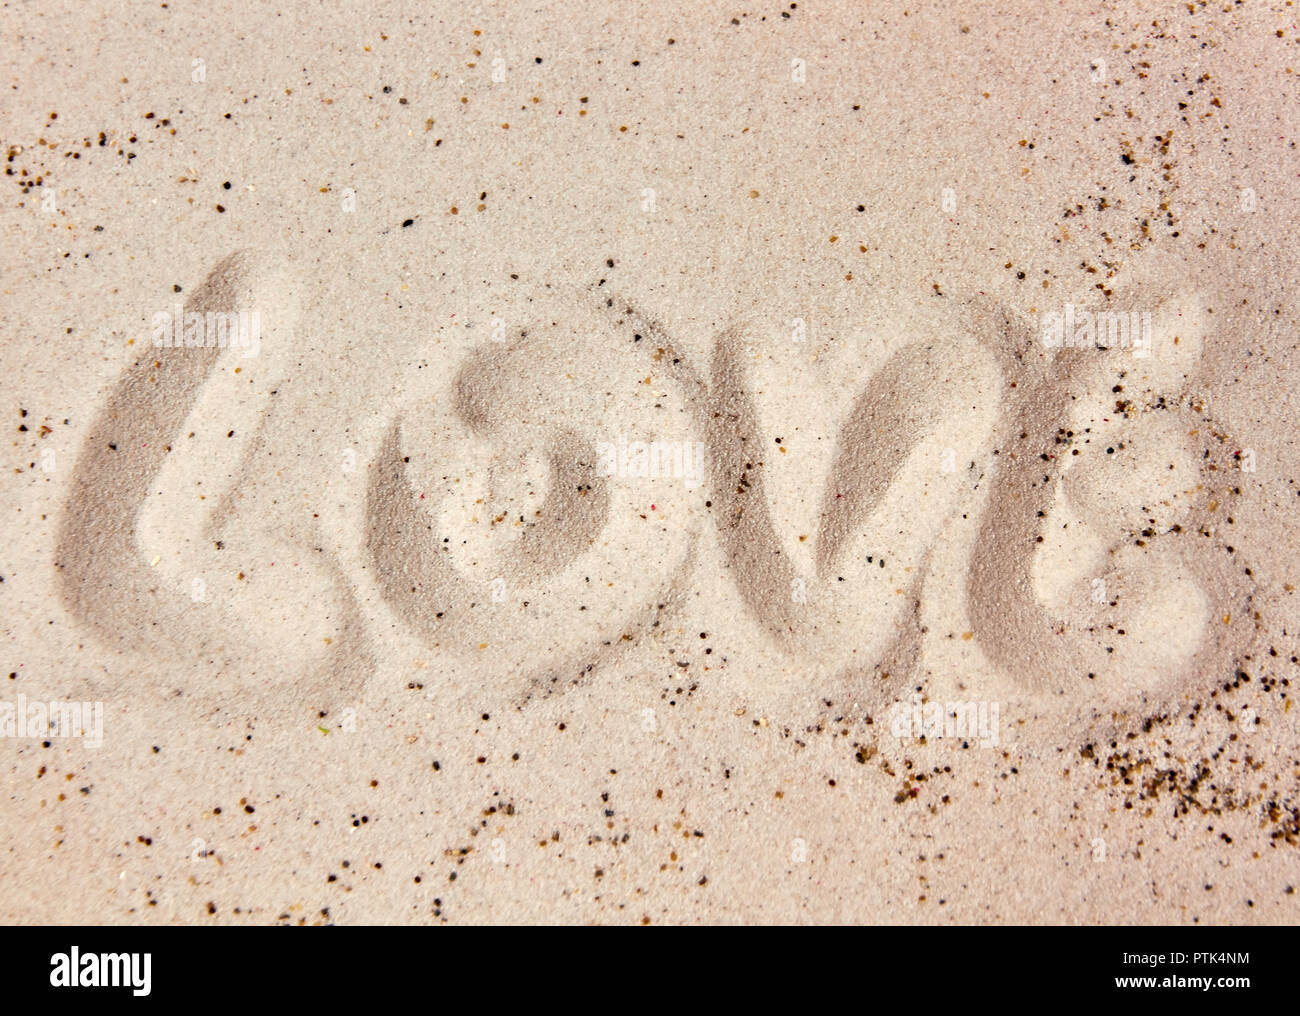 Il messaggio di amore nella sabbia Foto Stock